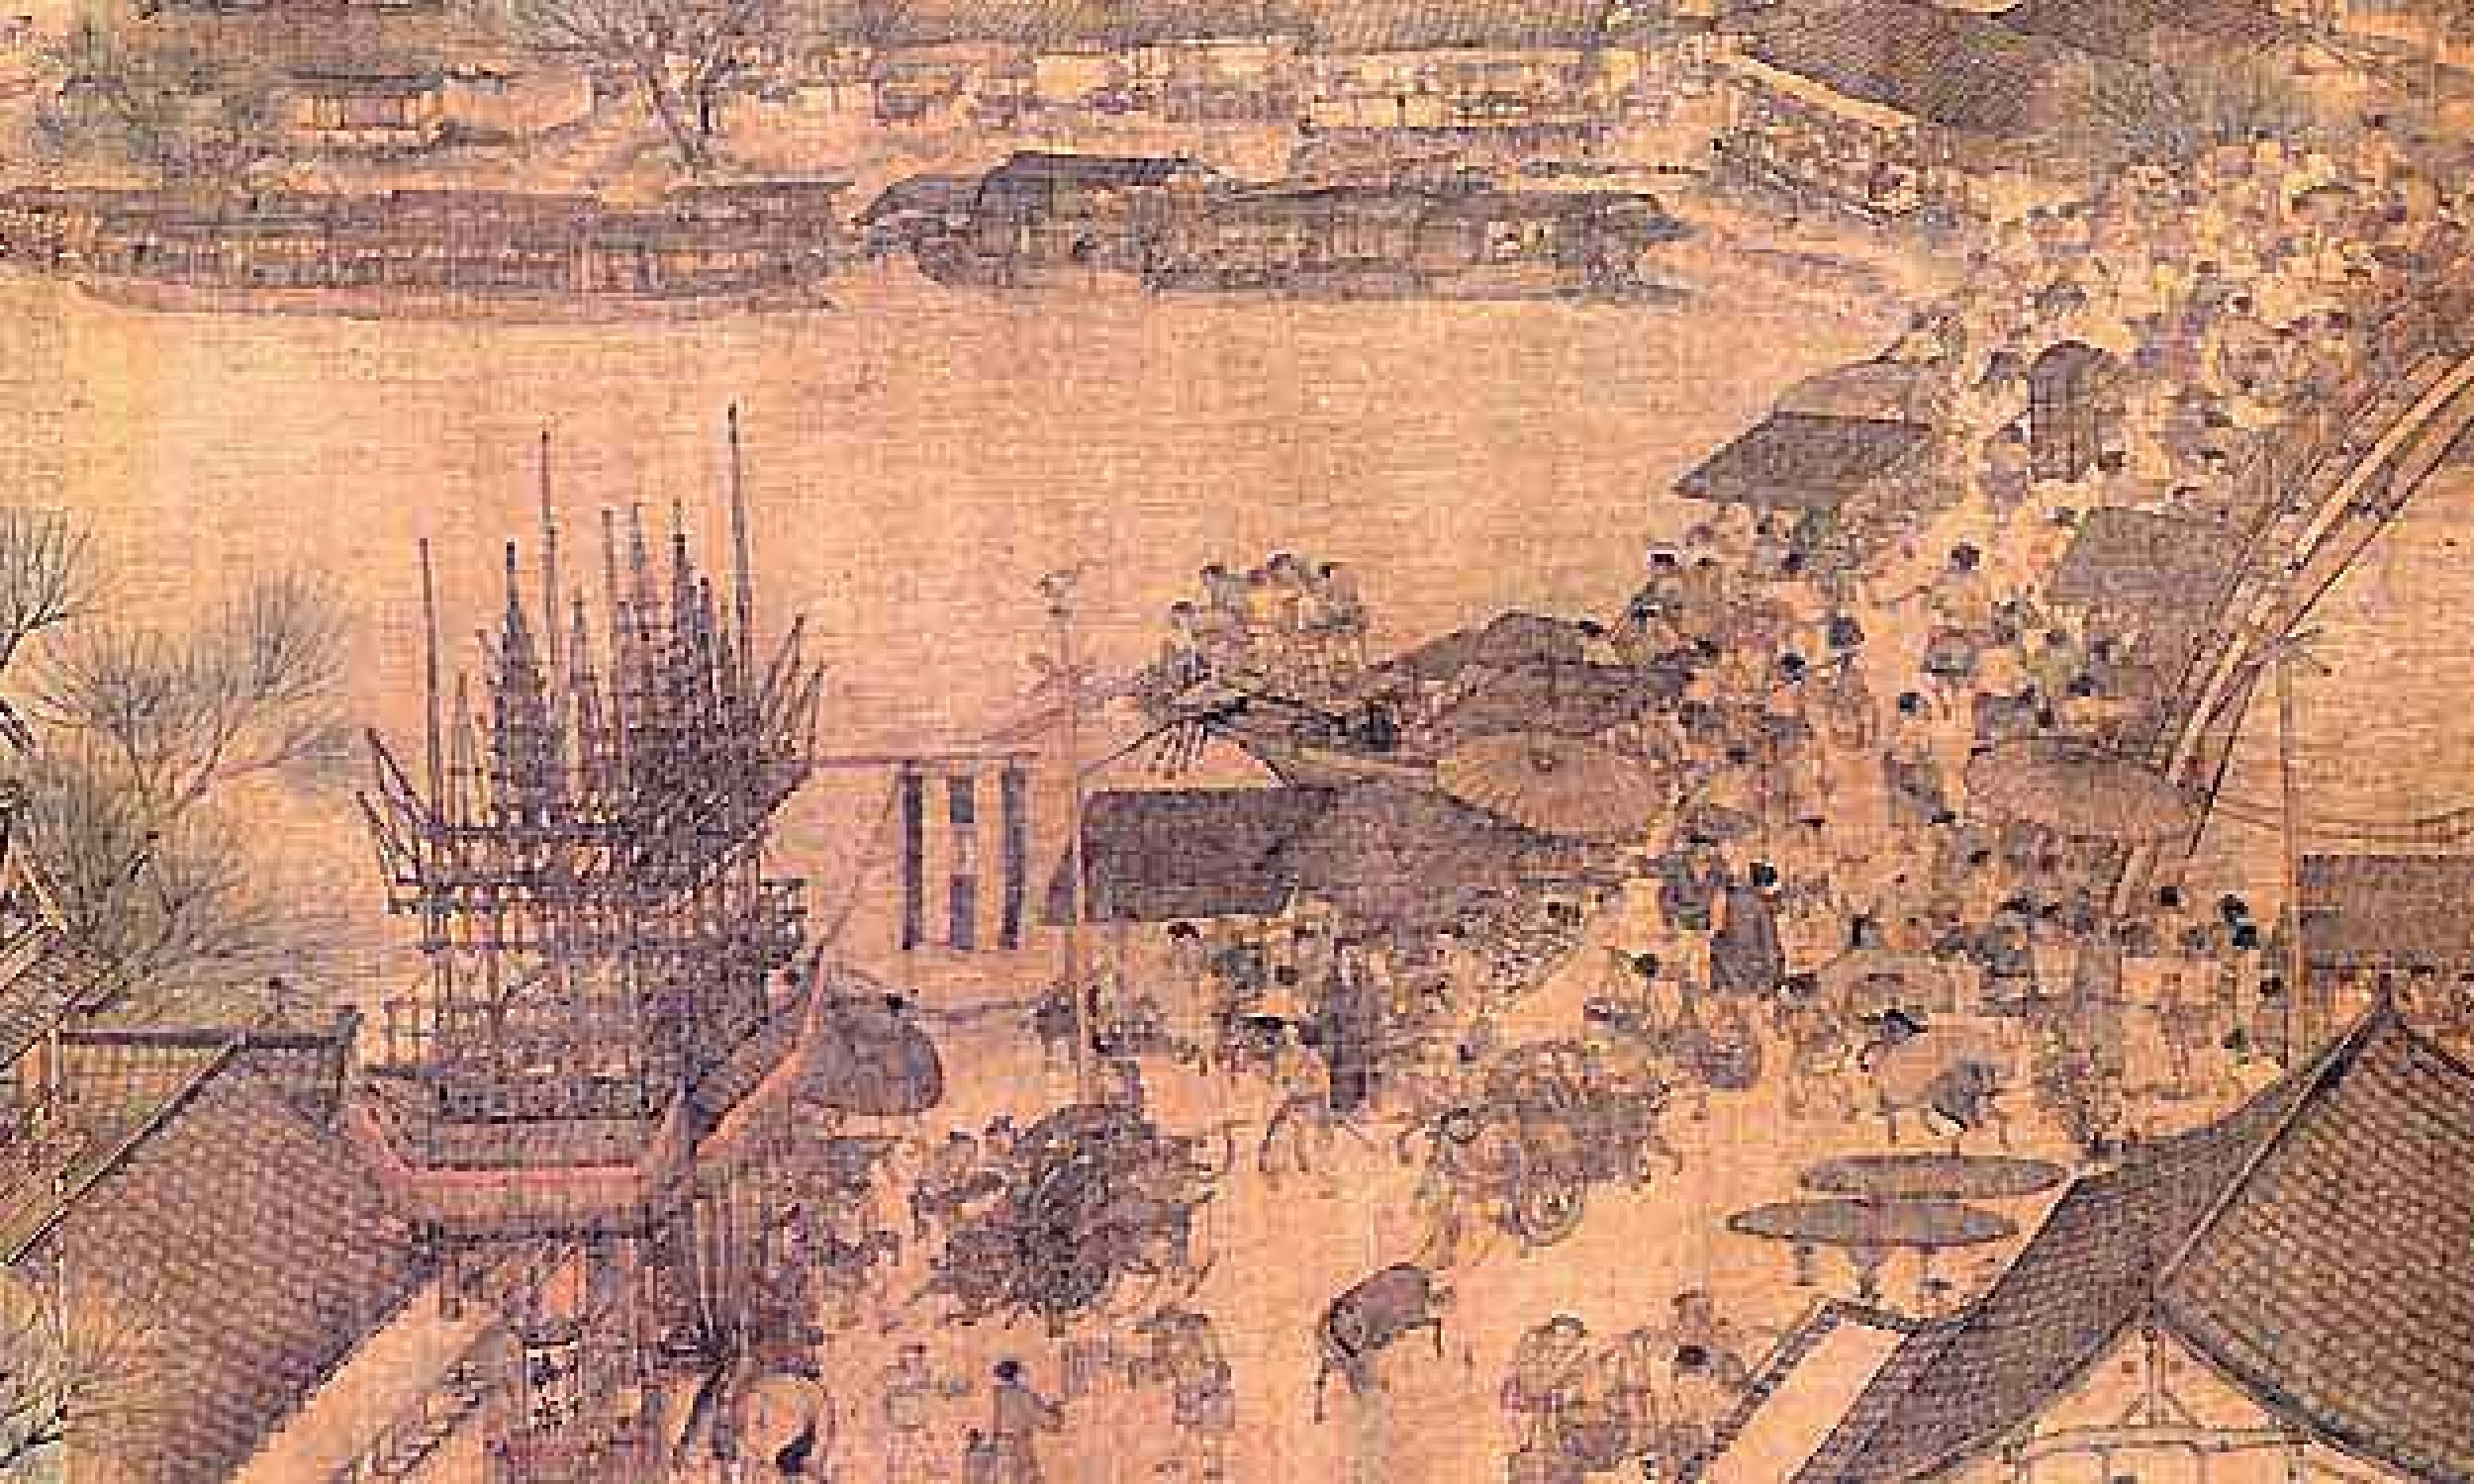 „Widok wzdłuż rzeki podczas święta Qingming” Zhang Zeduana powstał u schyłku panowania w chinach dynastii Song, czyli w XII wieku. Na zdjęciu detal przedstawiający łódź zmierzającą w kierunku mostu. Fot. http://depts.washington.edu/chinaciv/painting/4ptgqmsh.htm, Fu Xinian, ed. Zhongguo meishu quanji, Liang Song huihua, shang (Series Vol. 3), pl. 51, pp. 128-137. Zbiory Muzeum Pałacowego w Pekinie, Domena publiczna, https://commons.wikimedia.org/w/index.php?curid=3507810